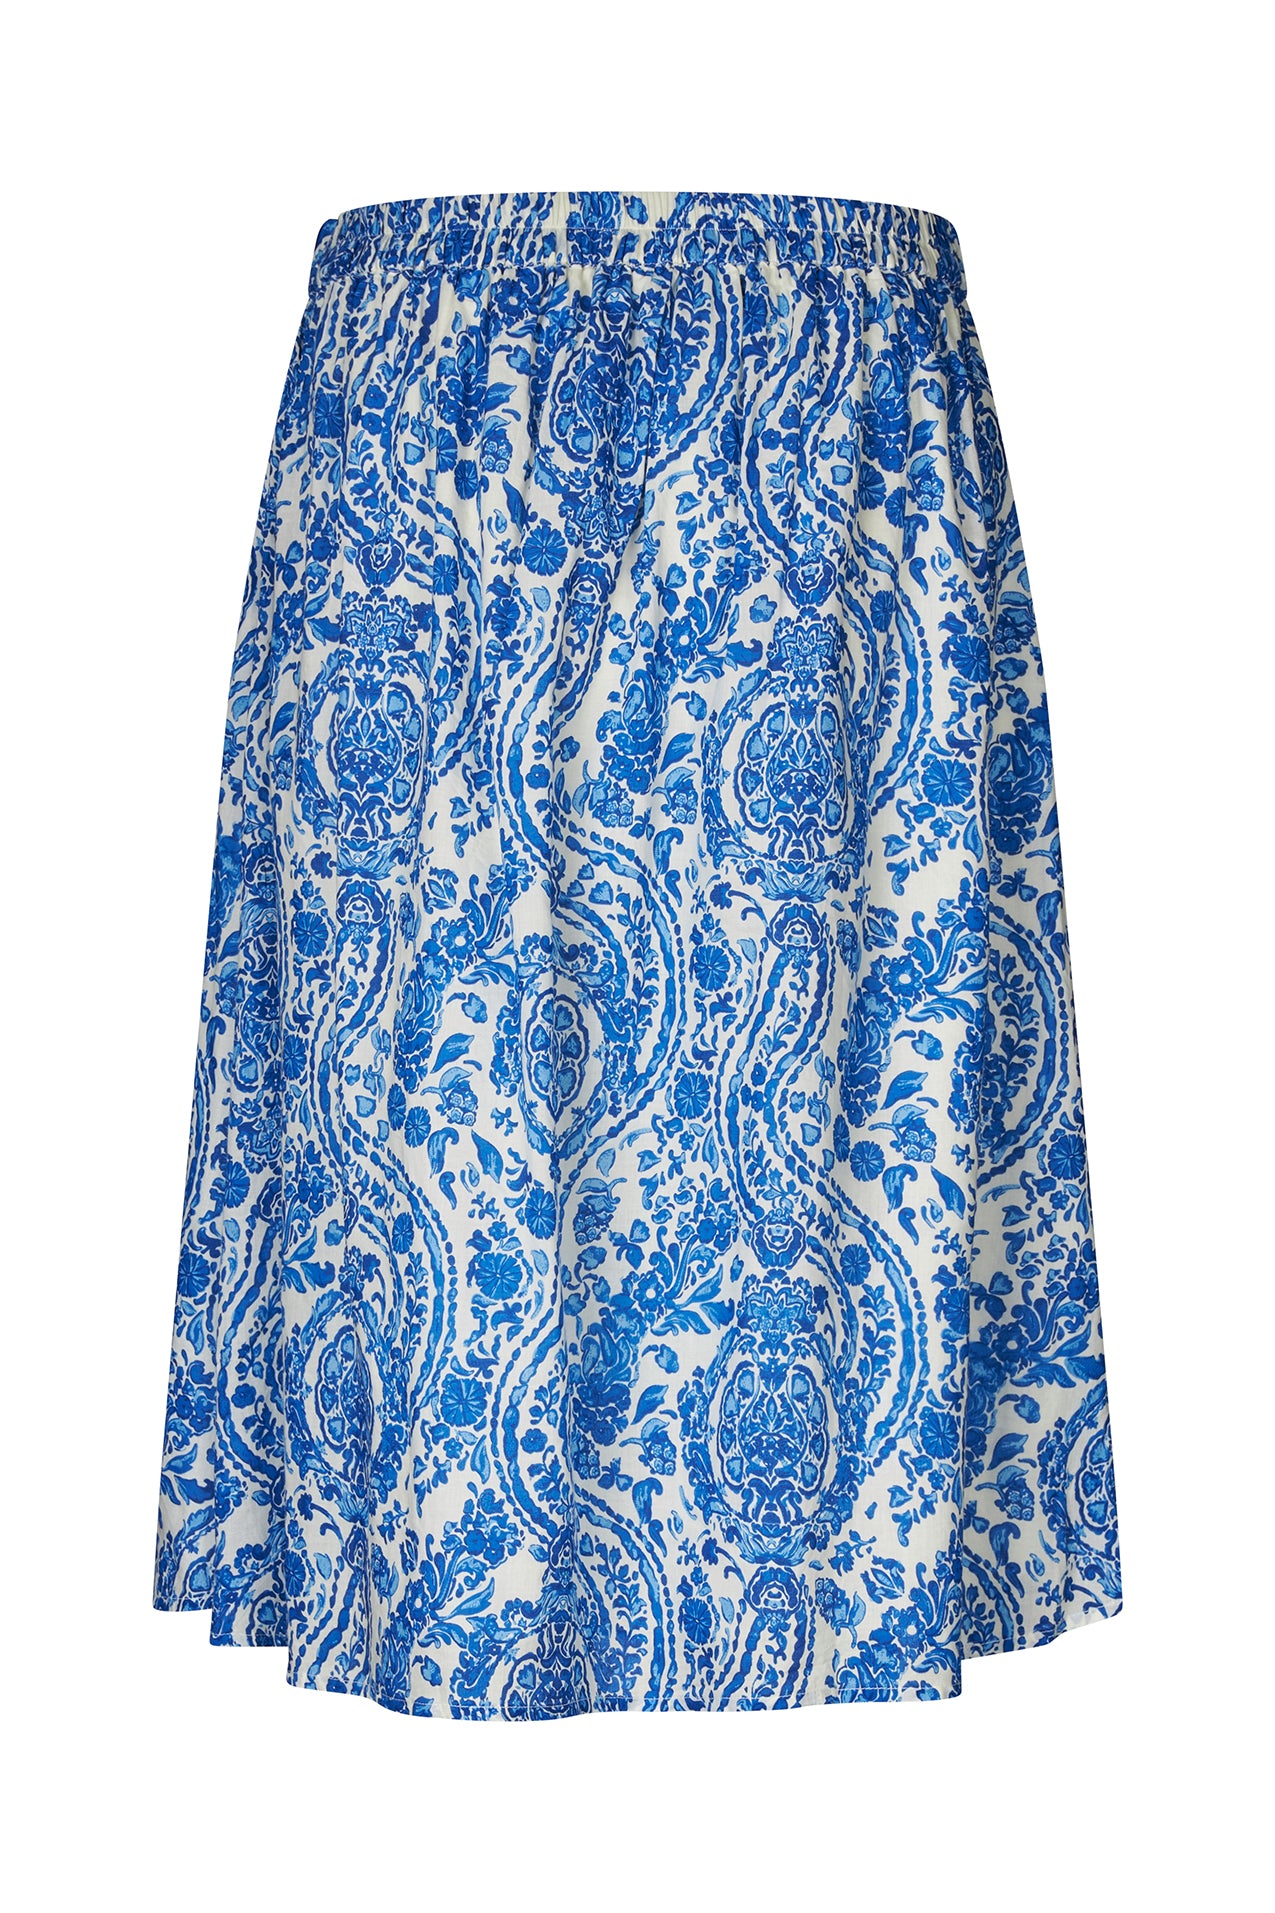 Lollys Laundry EllaLL Midi Skirt Skirt 20 Blue